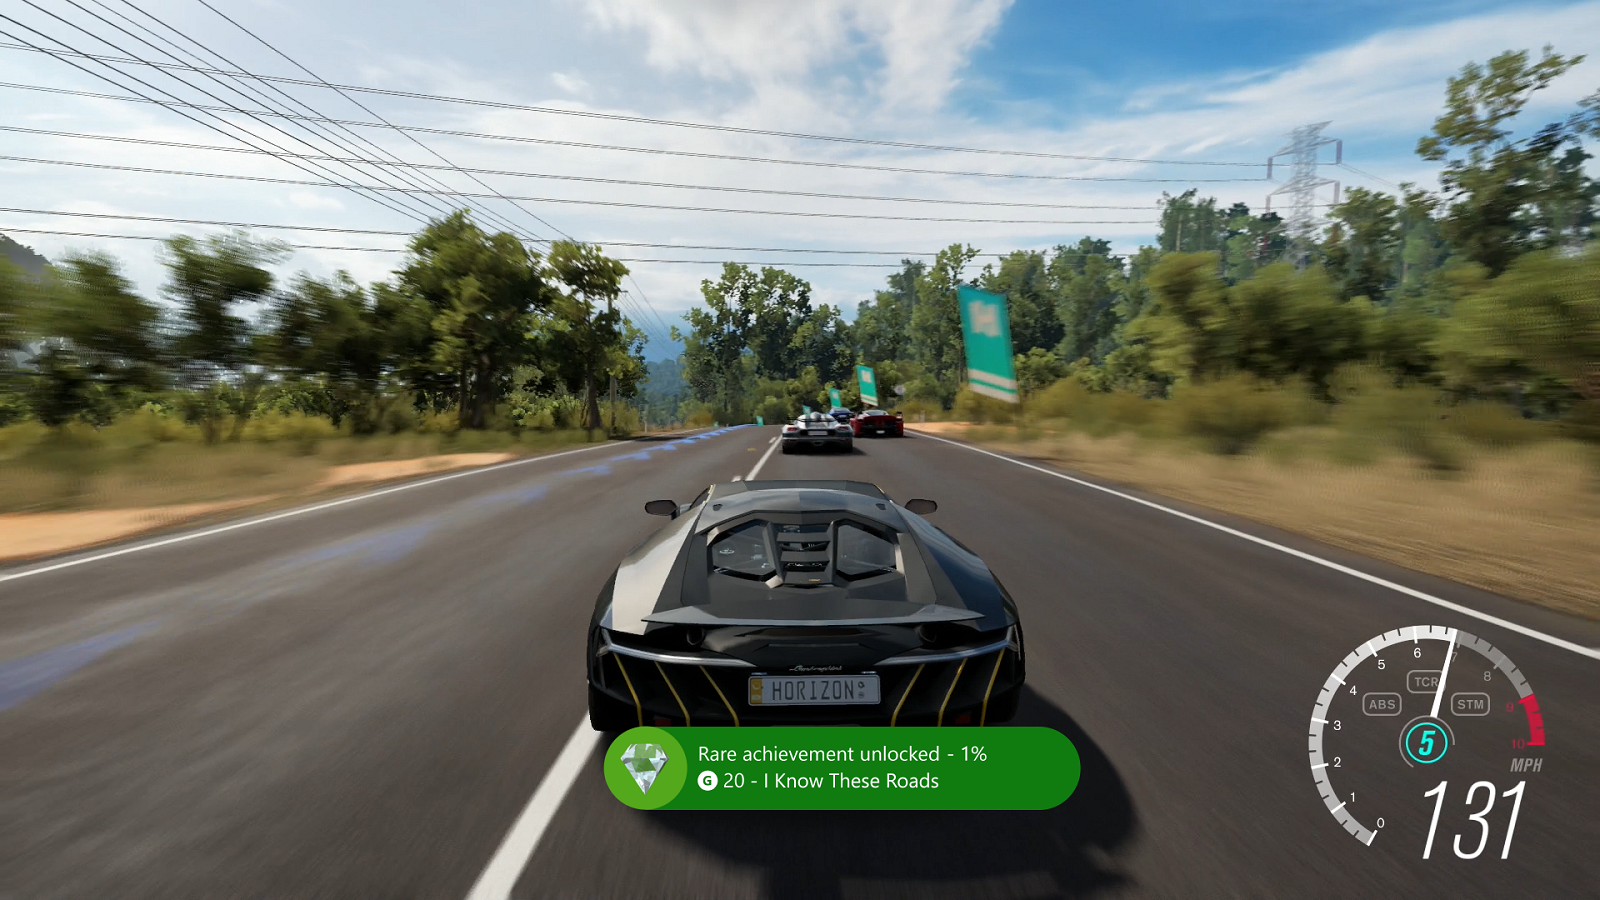 Achievement Rarity showcased in "Forza Horizon 3"